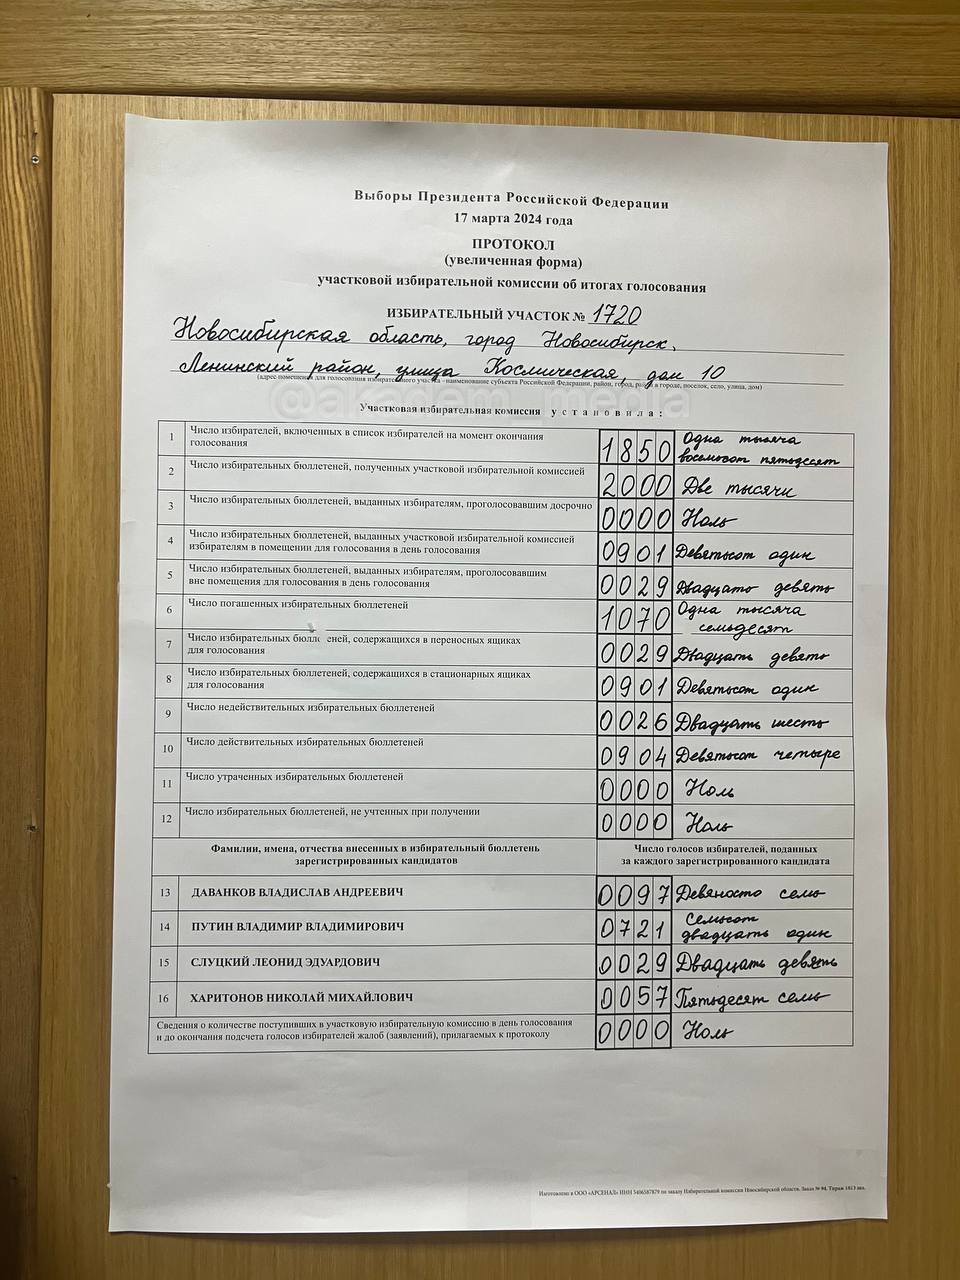 Появились первые данные по итогам выборов президента в Новосибирске